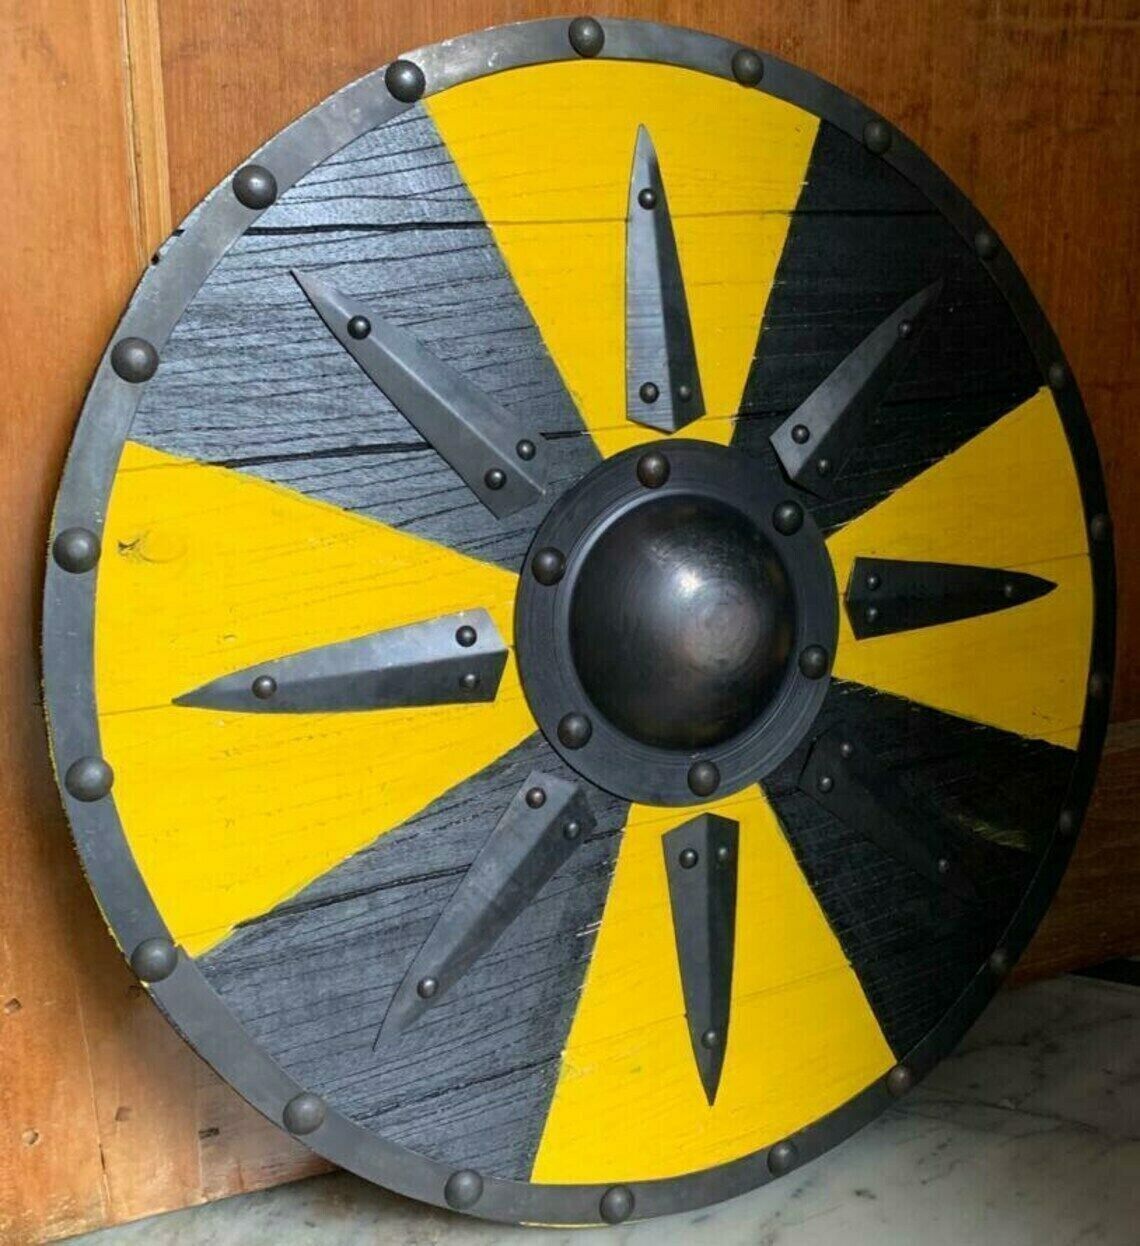 Escudo vikingo de tablones negros y amarillos con tirantes de acero, 24"